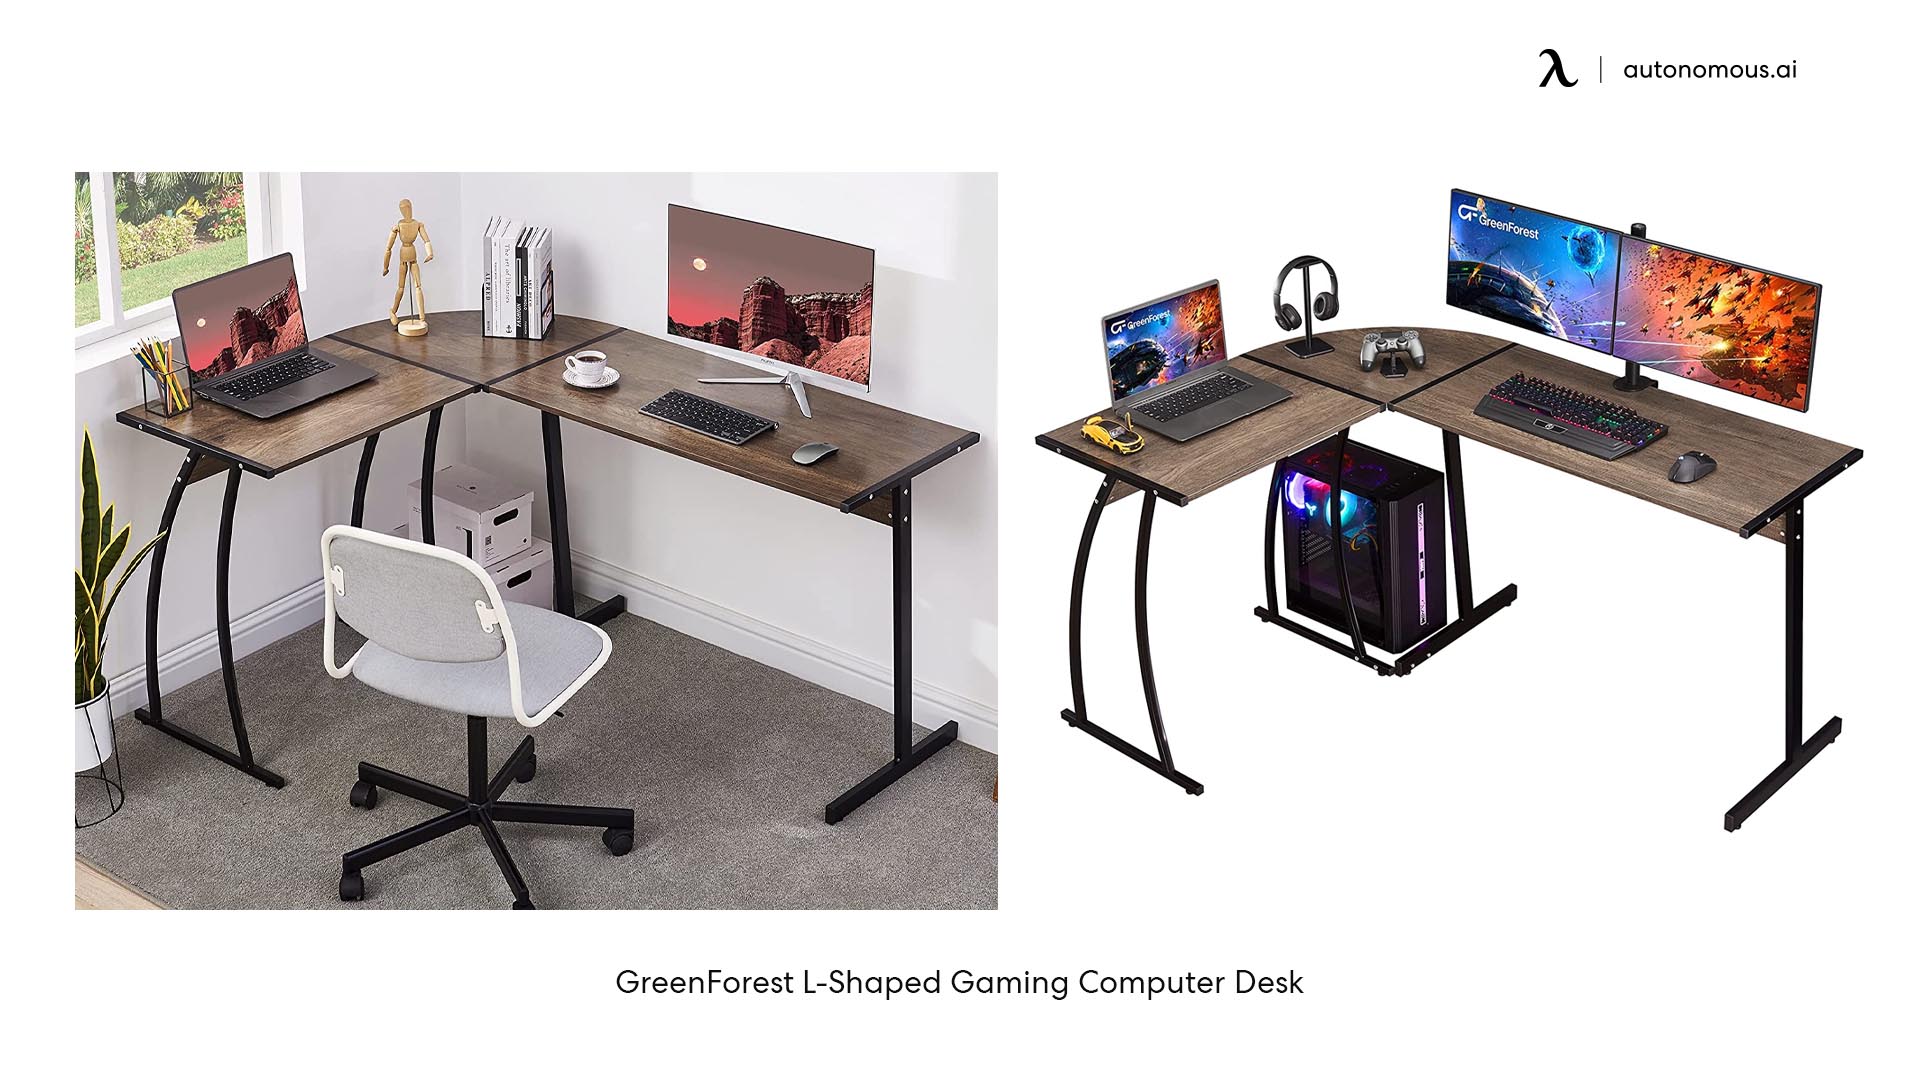 GreenForest L-Shaped Gaming Computer Desk